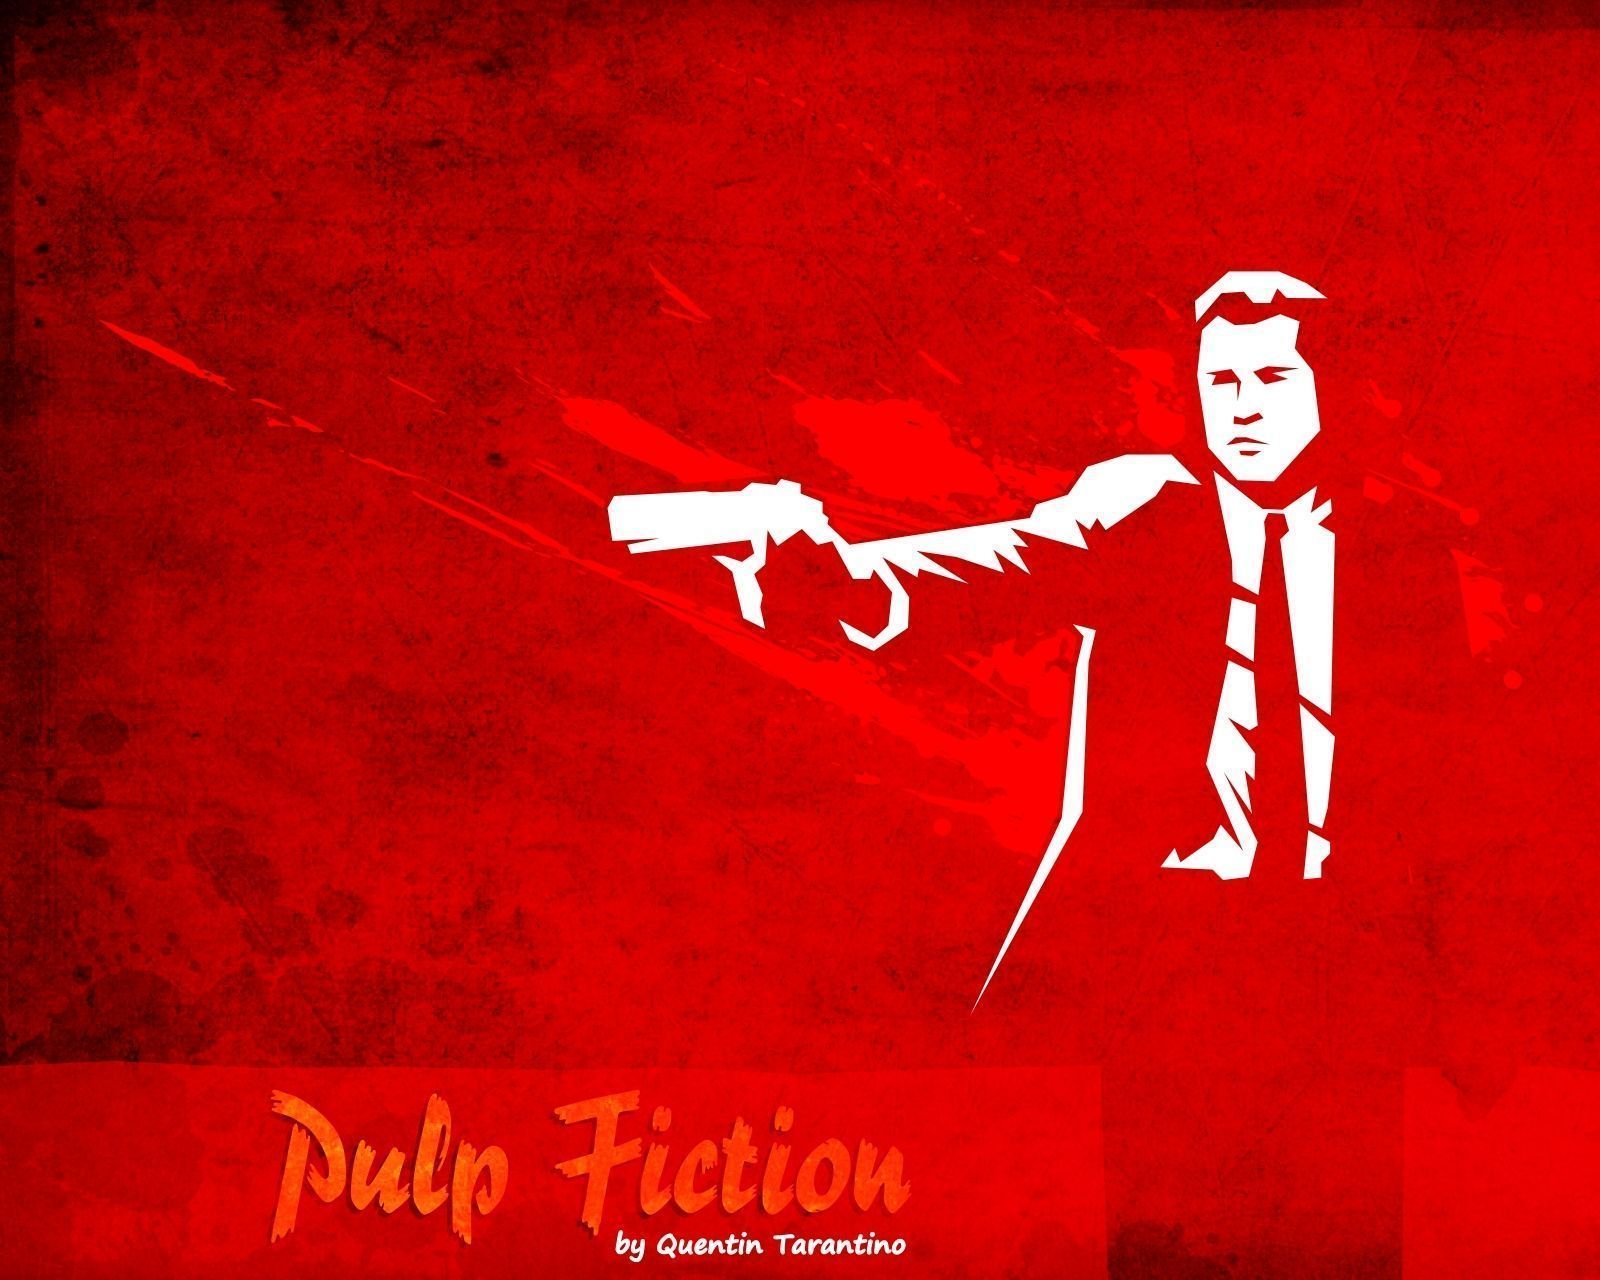 Vincent Vega - Pulp Fiction Wallpaper (13123837) - Fanpop